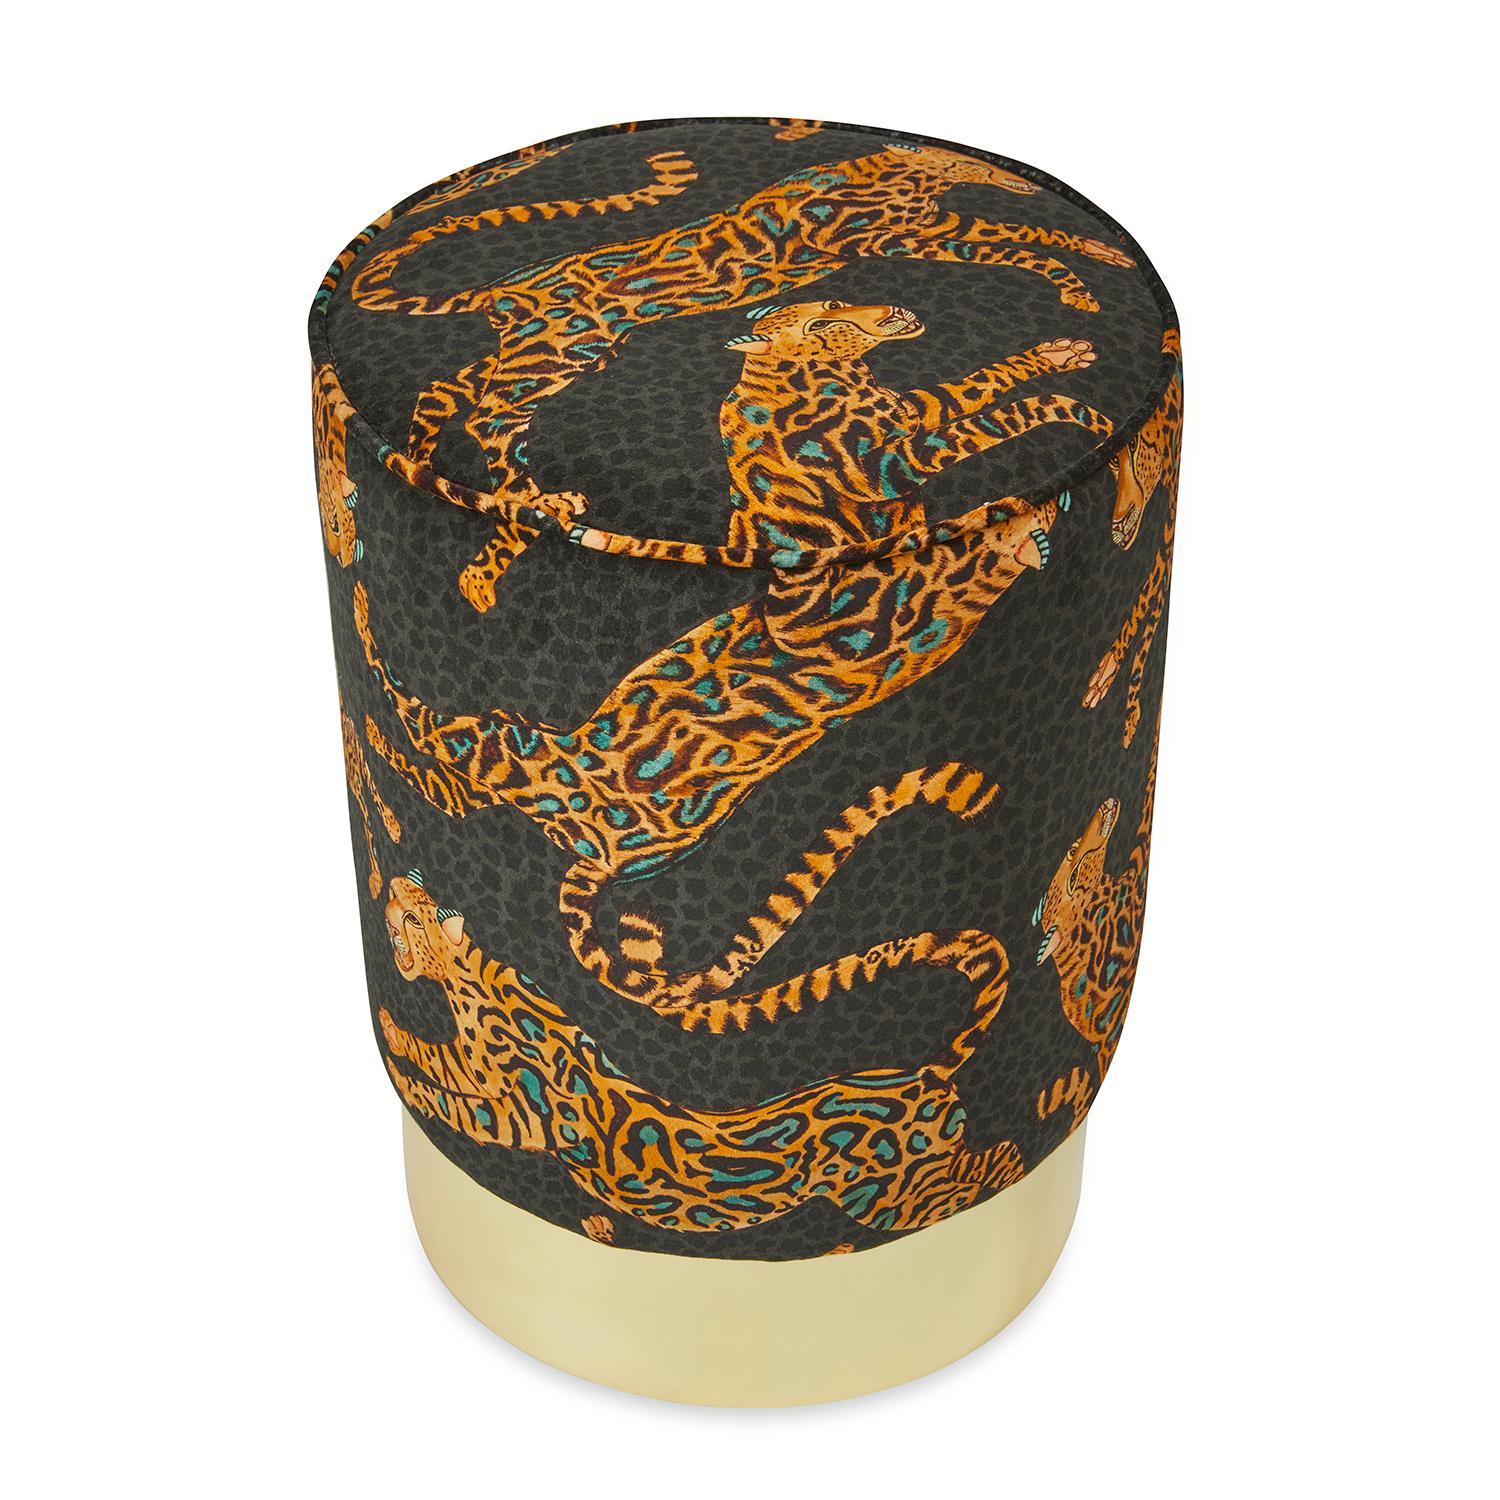 Ein luxuriöser, mit goldenem Gepardenkönig-Samtstoff bezogener Pouff mit einem Messingfuß.

Informationen zum Produkt
Abmessungen: 15 